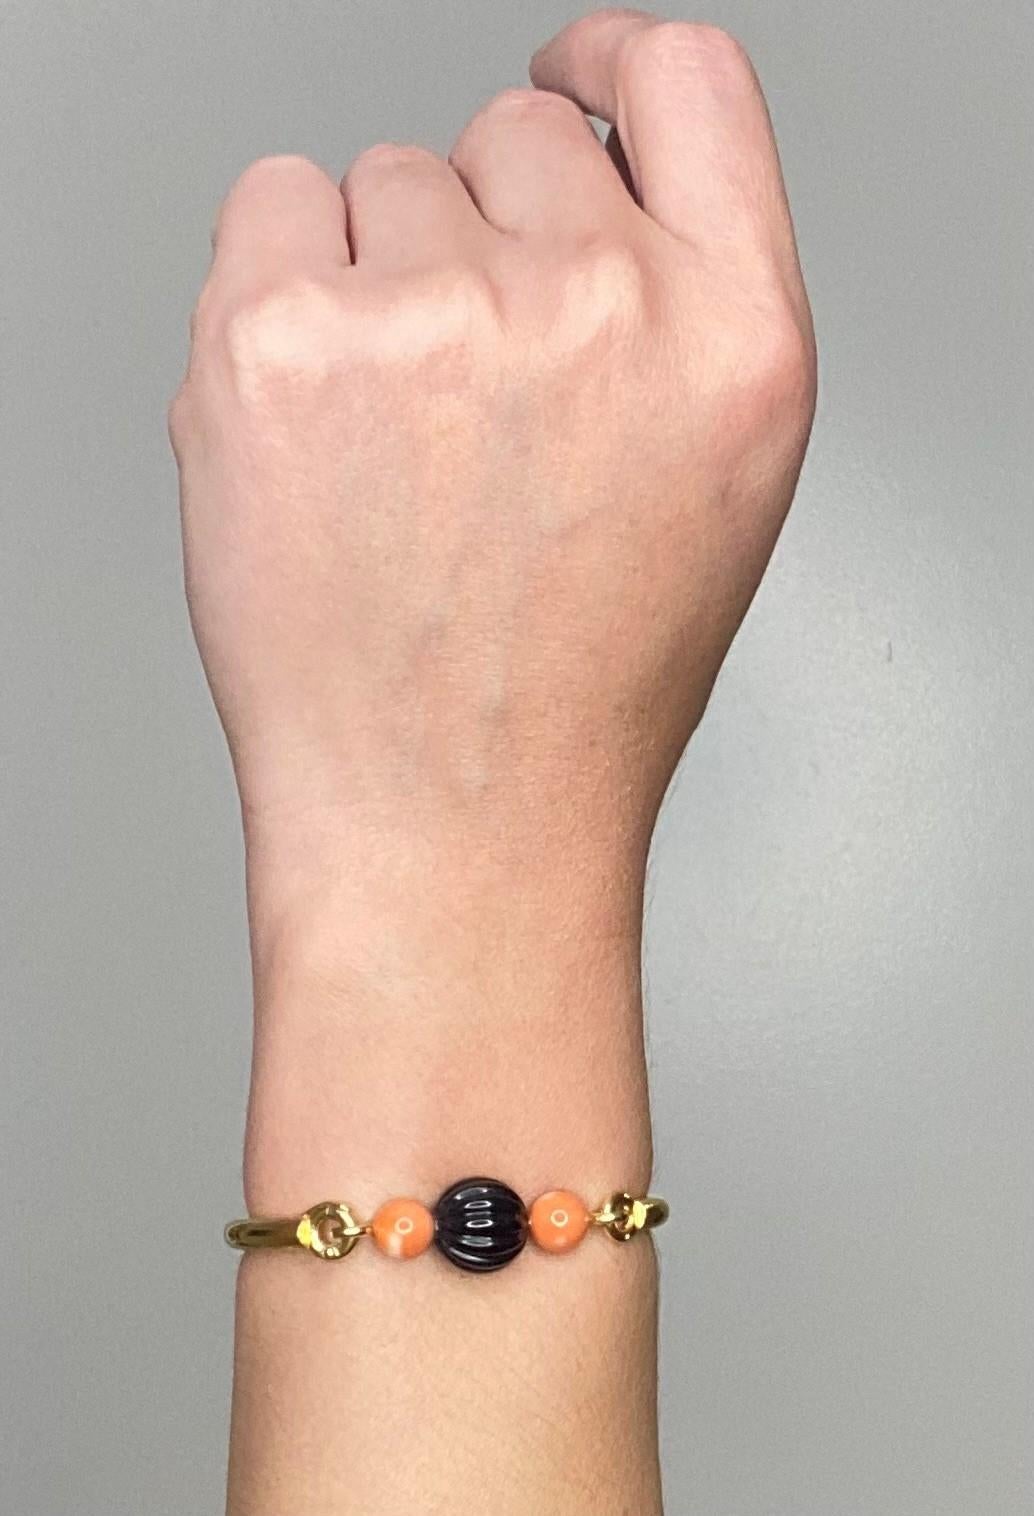 Magnifique bracelet bangle conçu par Boucheron.

Un bracelet français vintage, jeune et très chic, réalisé par la maison Boucheron dans les années 1960-1970. Fabriqué par le maître joaillier parisien jean-Thierry Bondt  en or jaune massif 18 carats